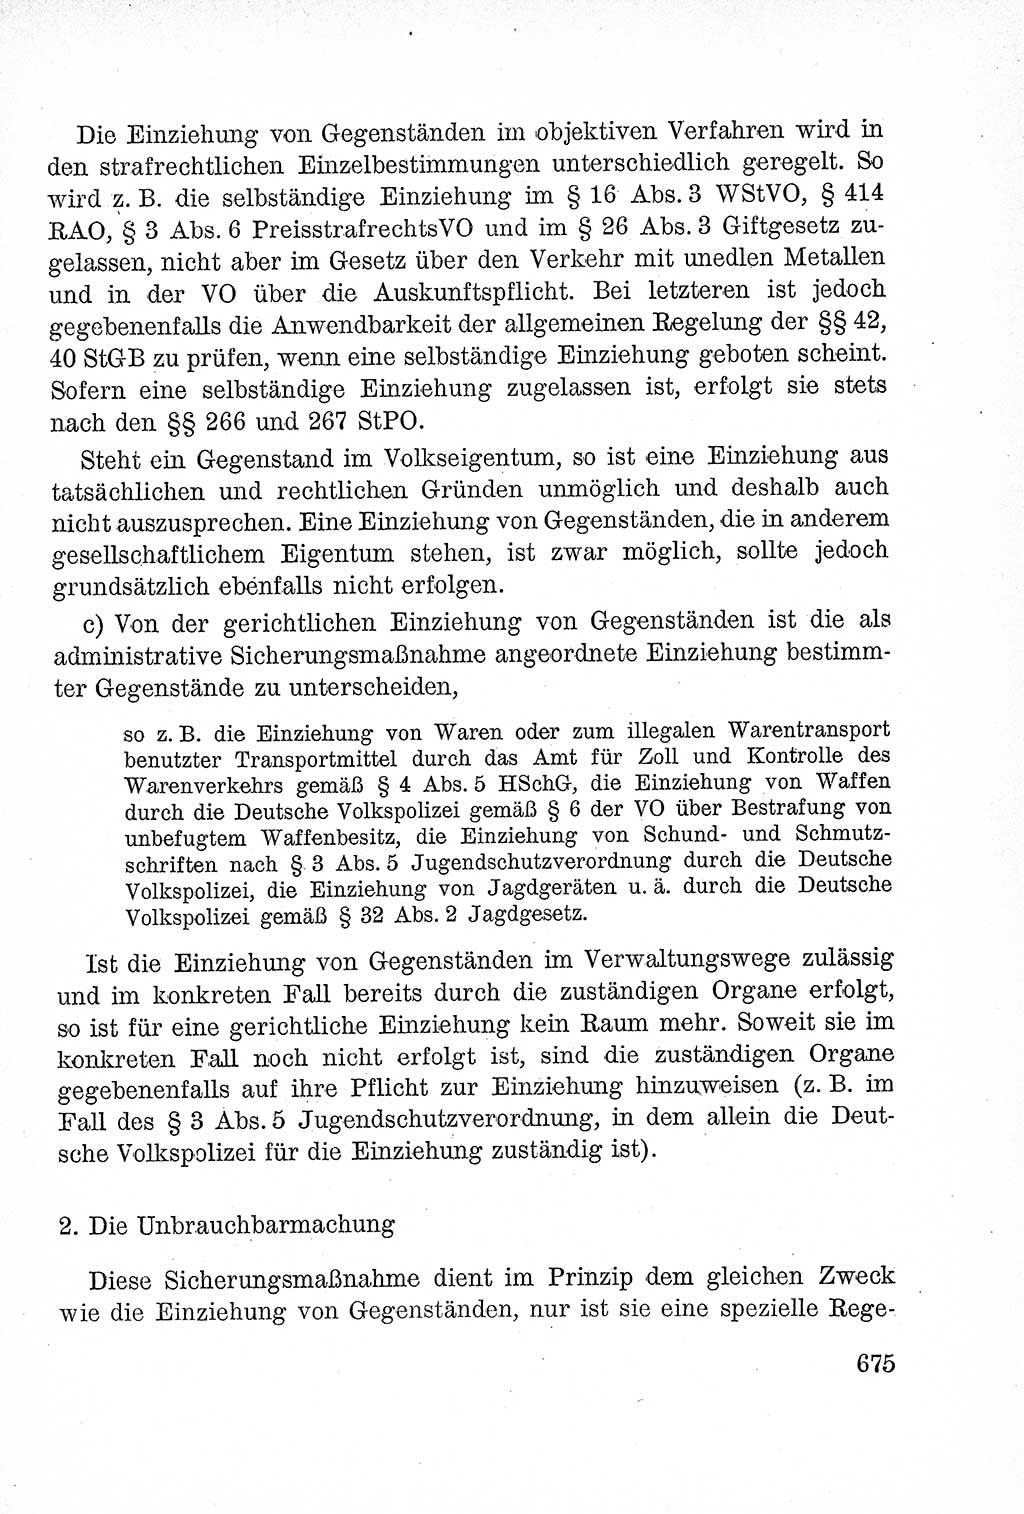 Lehrbuch des Strafrechts der Deutschen Demokratischen Republik (DDR), Allgemeiner Teil 1957, Seite 675 (Lb. Strafr. DDR AT 1957, S. 675)